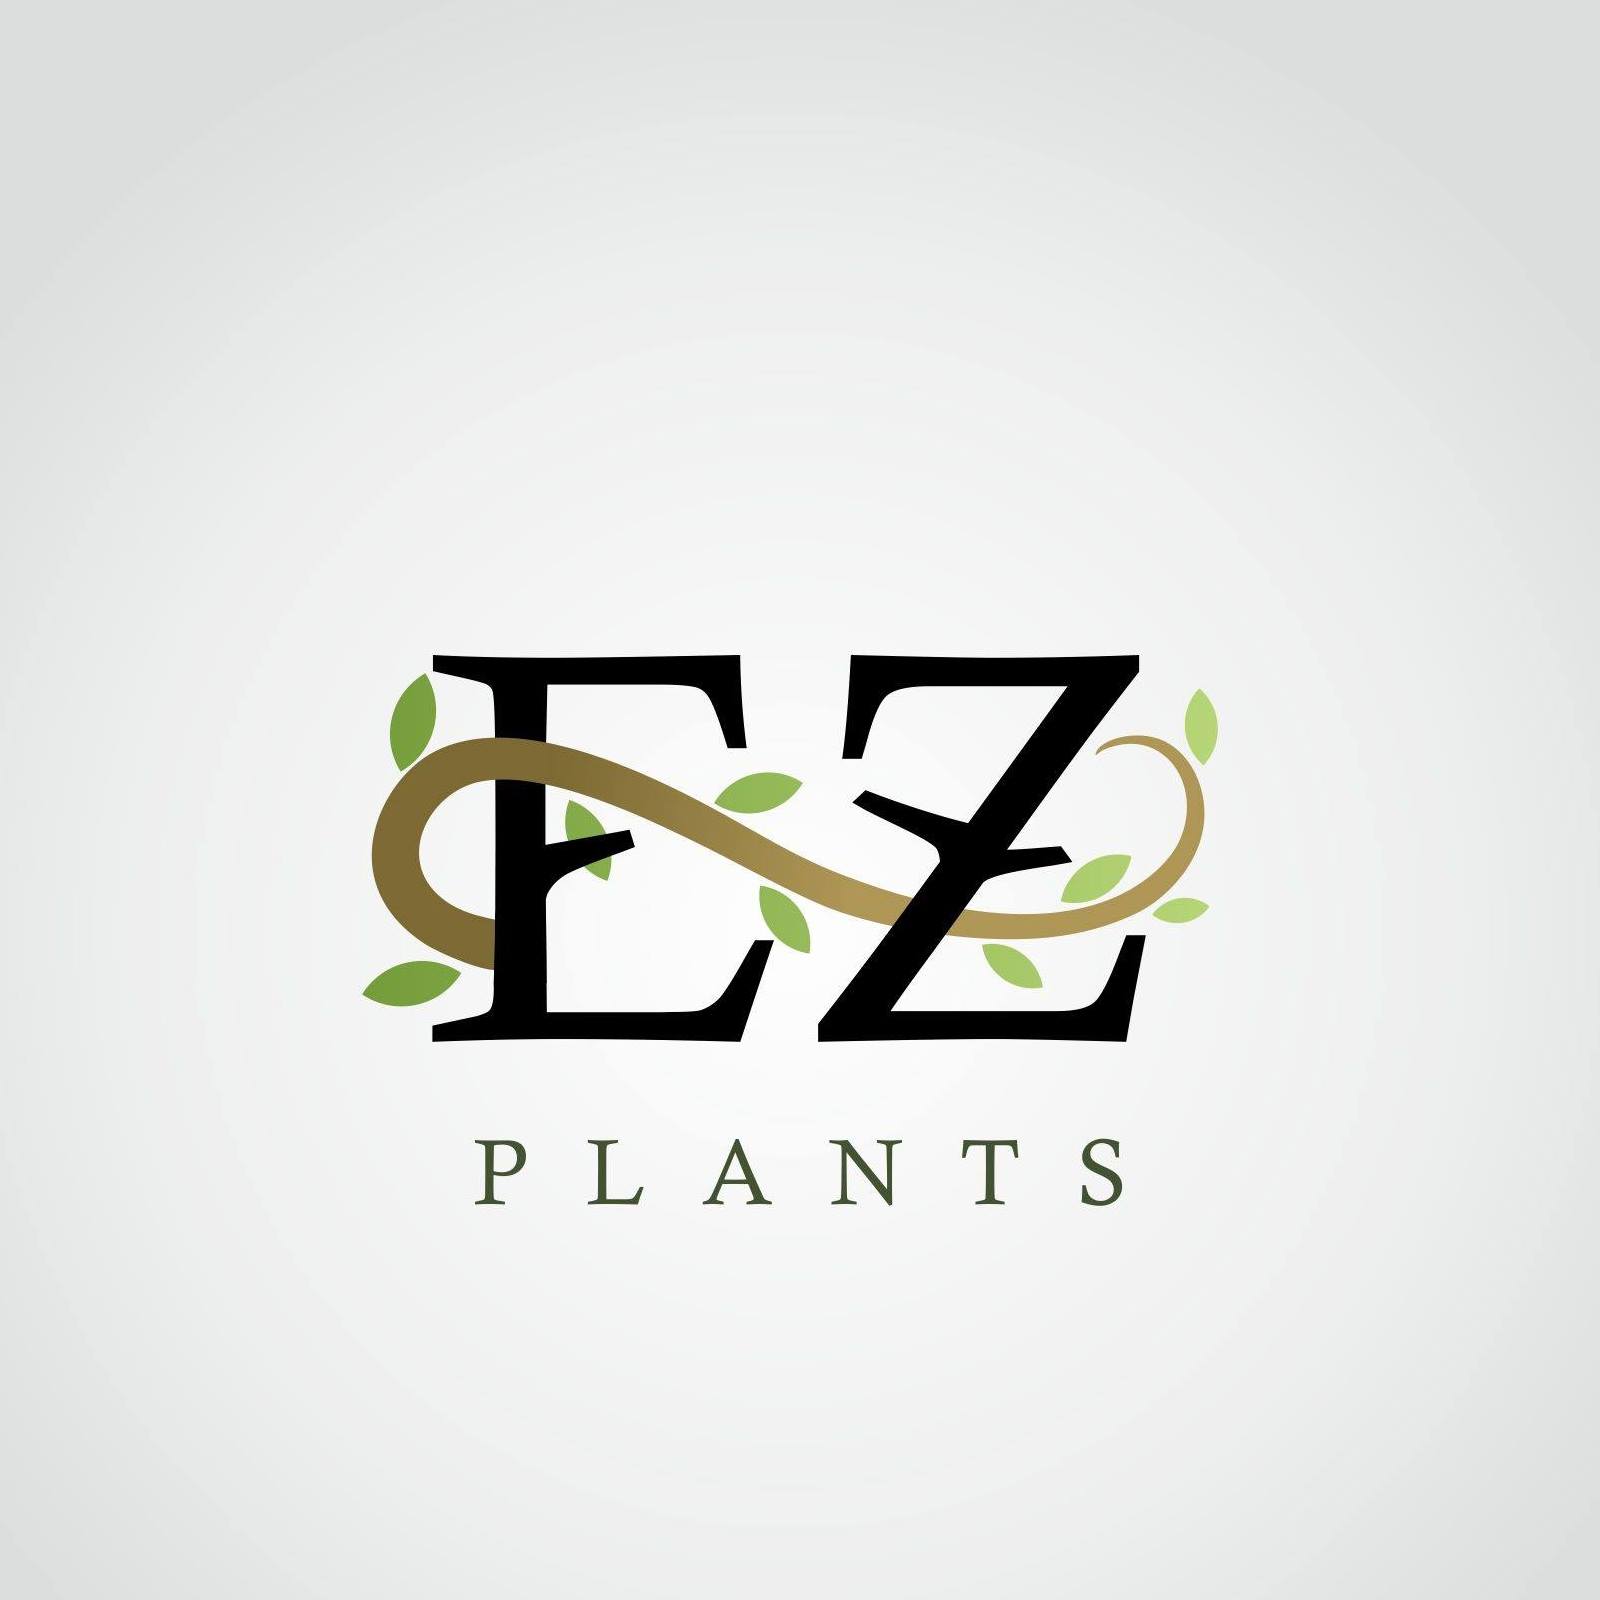 EZ Plants